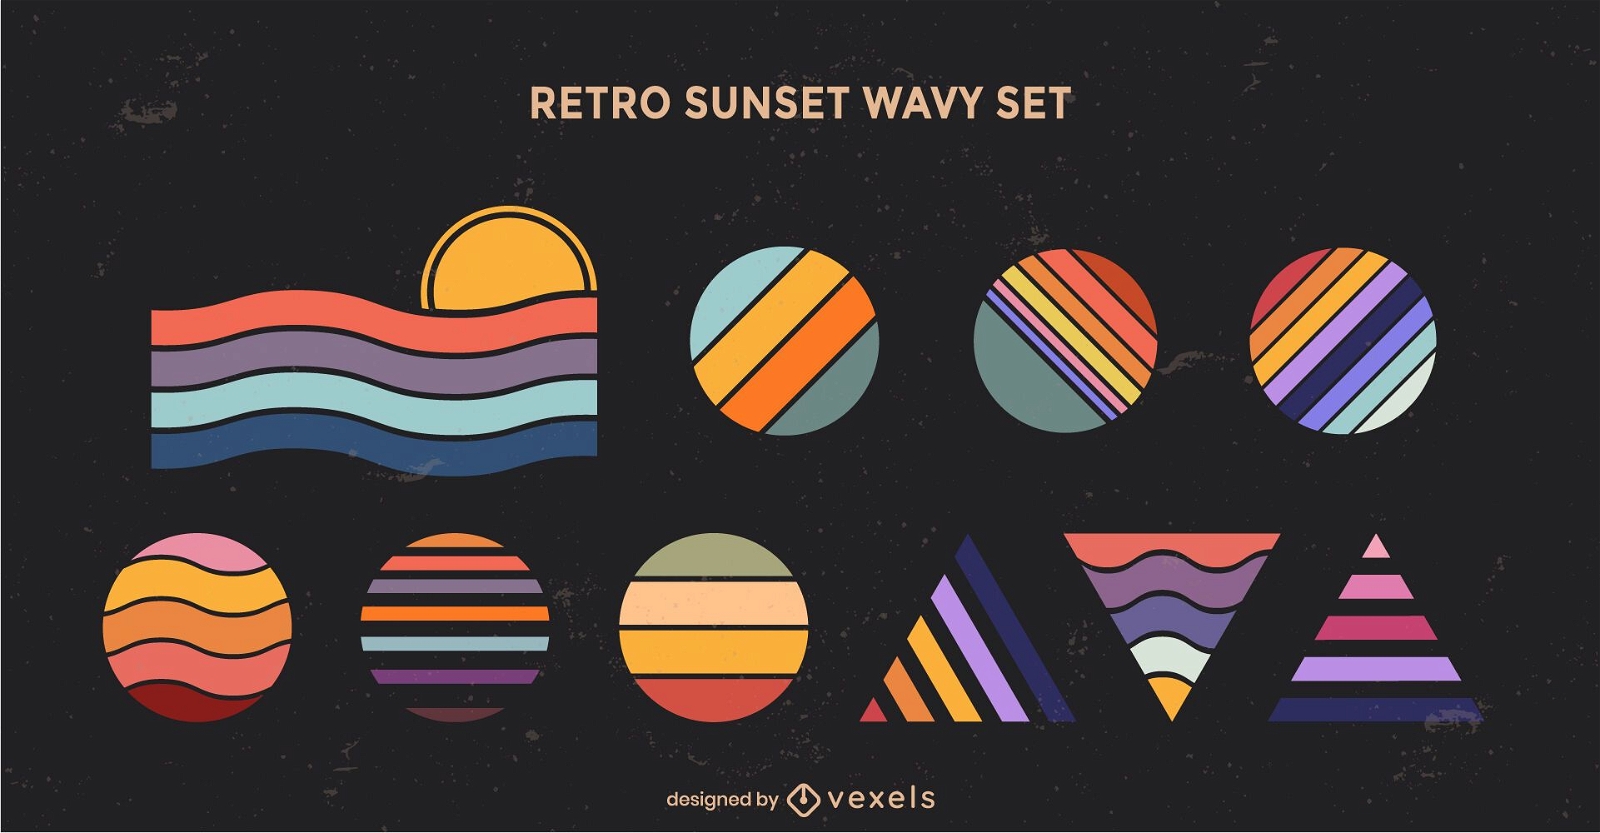 Retro sunset geometric wavy shapes set